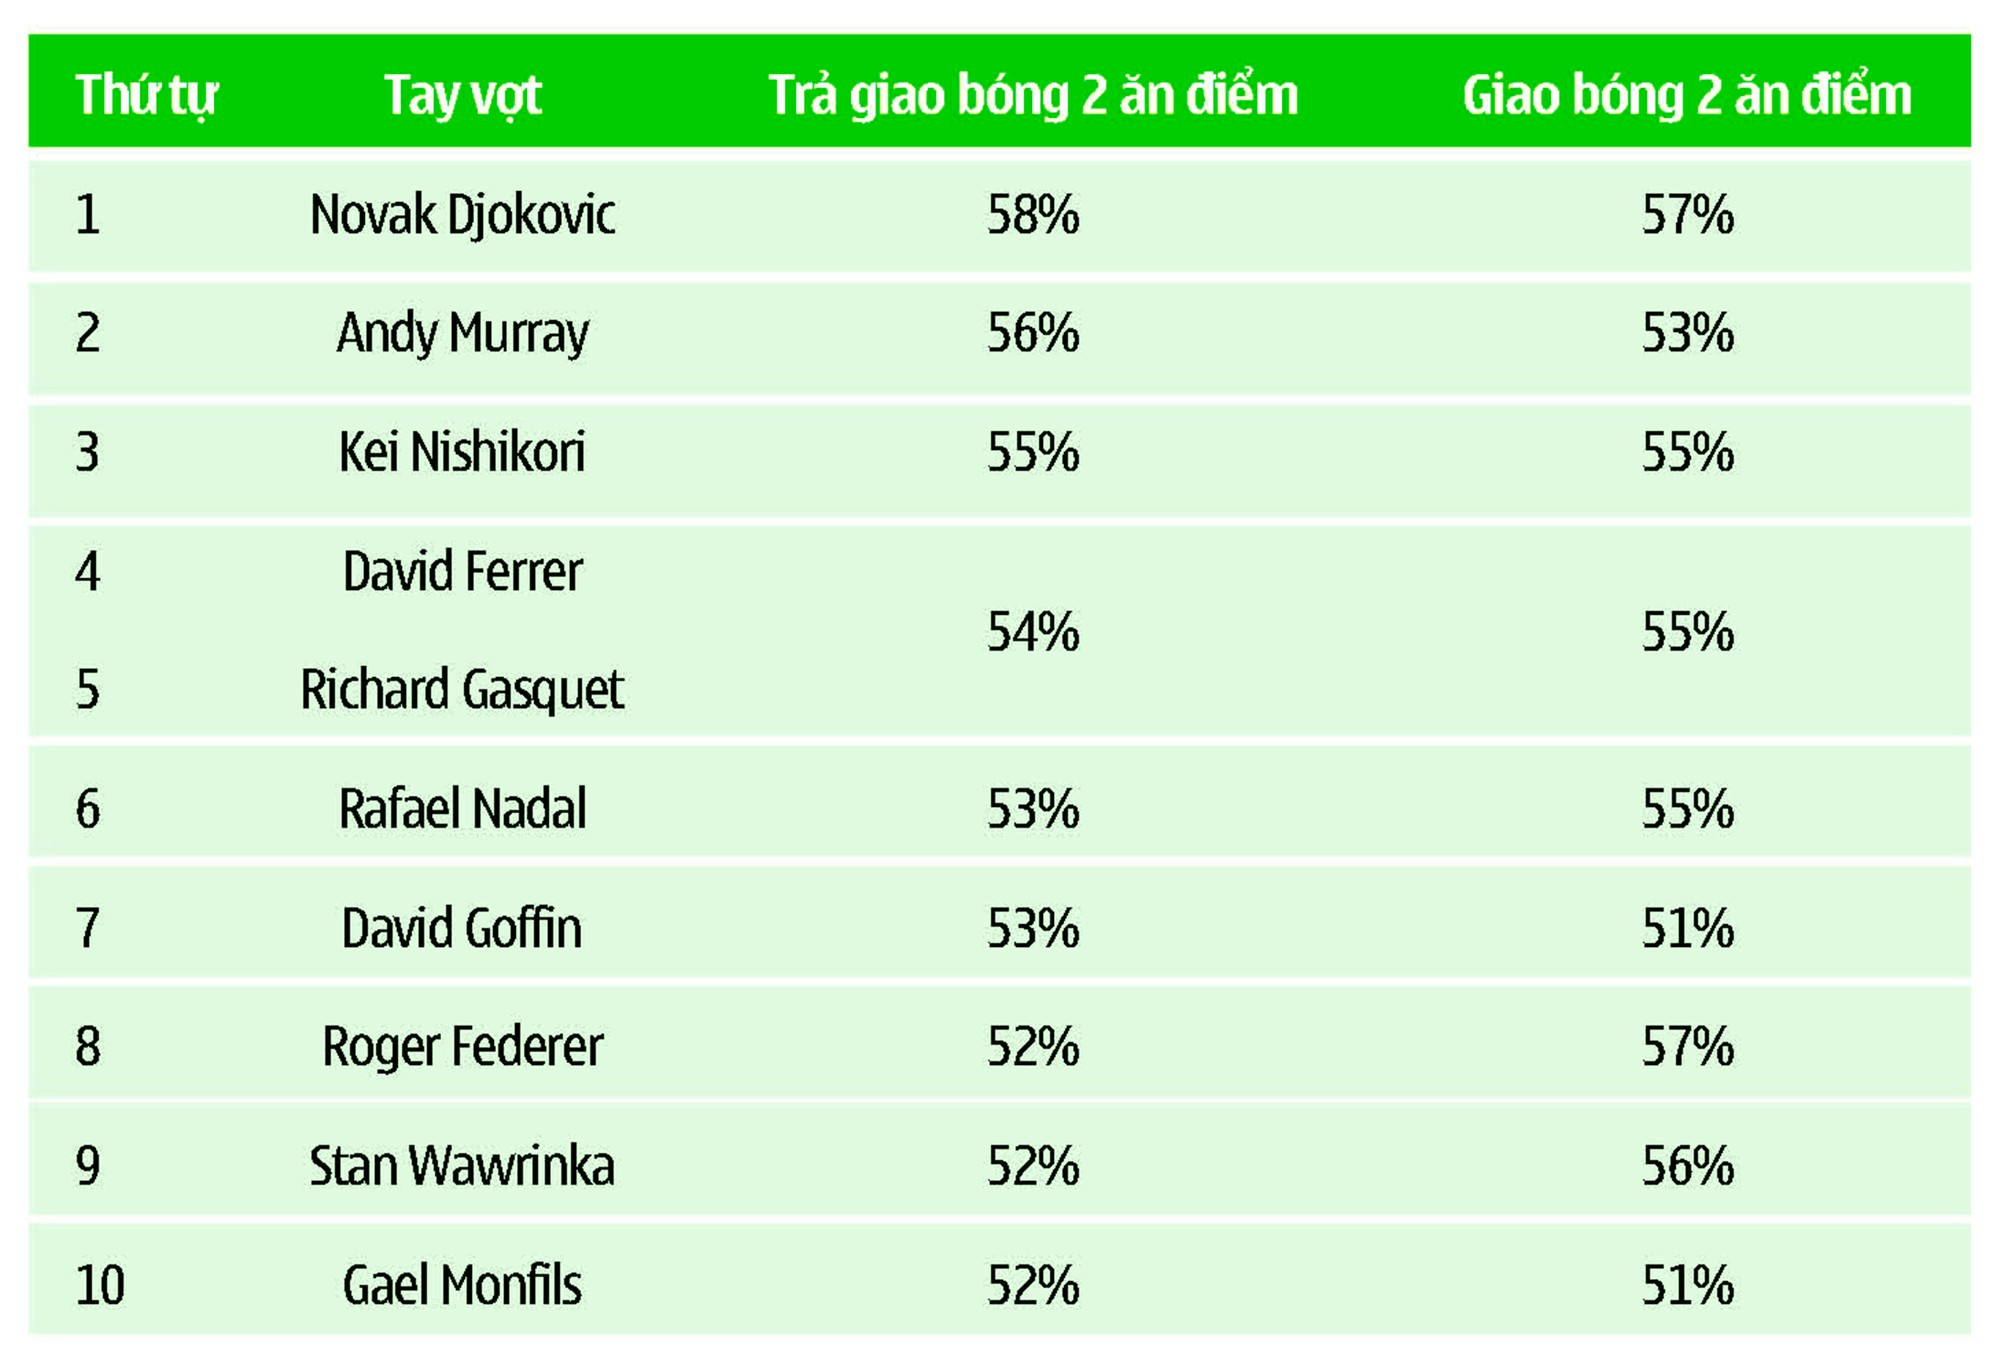 10 tay vợt đạt tỷ lệ trả giao bóng 2 ăn điểm cao nhất cho đến 5/2016